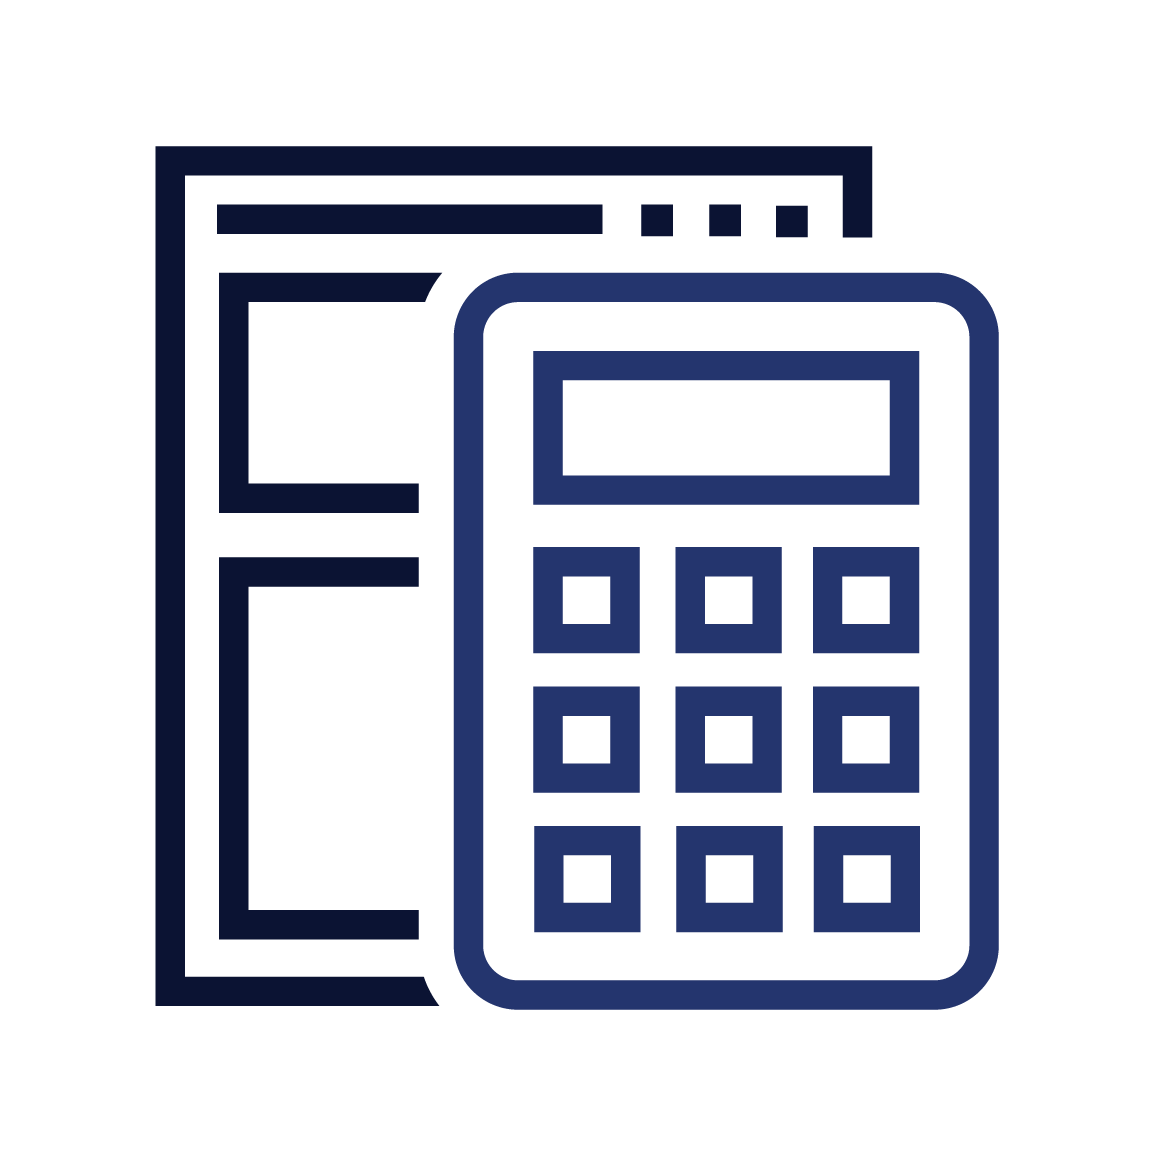 Paper and calculator icon